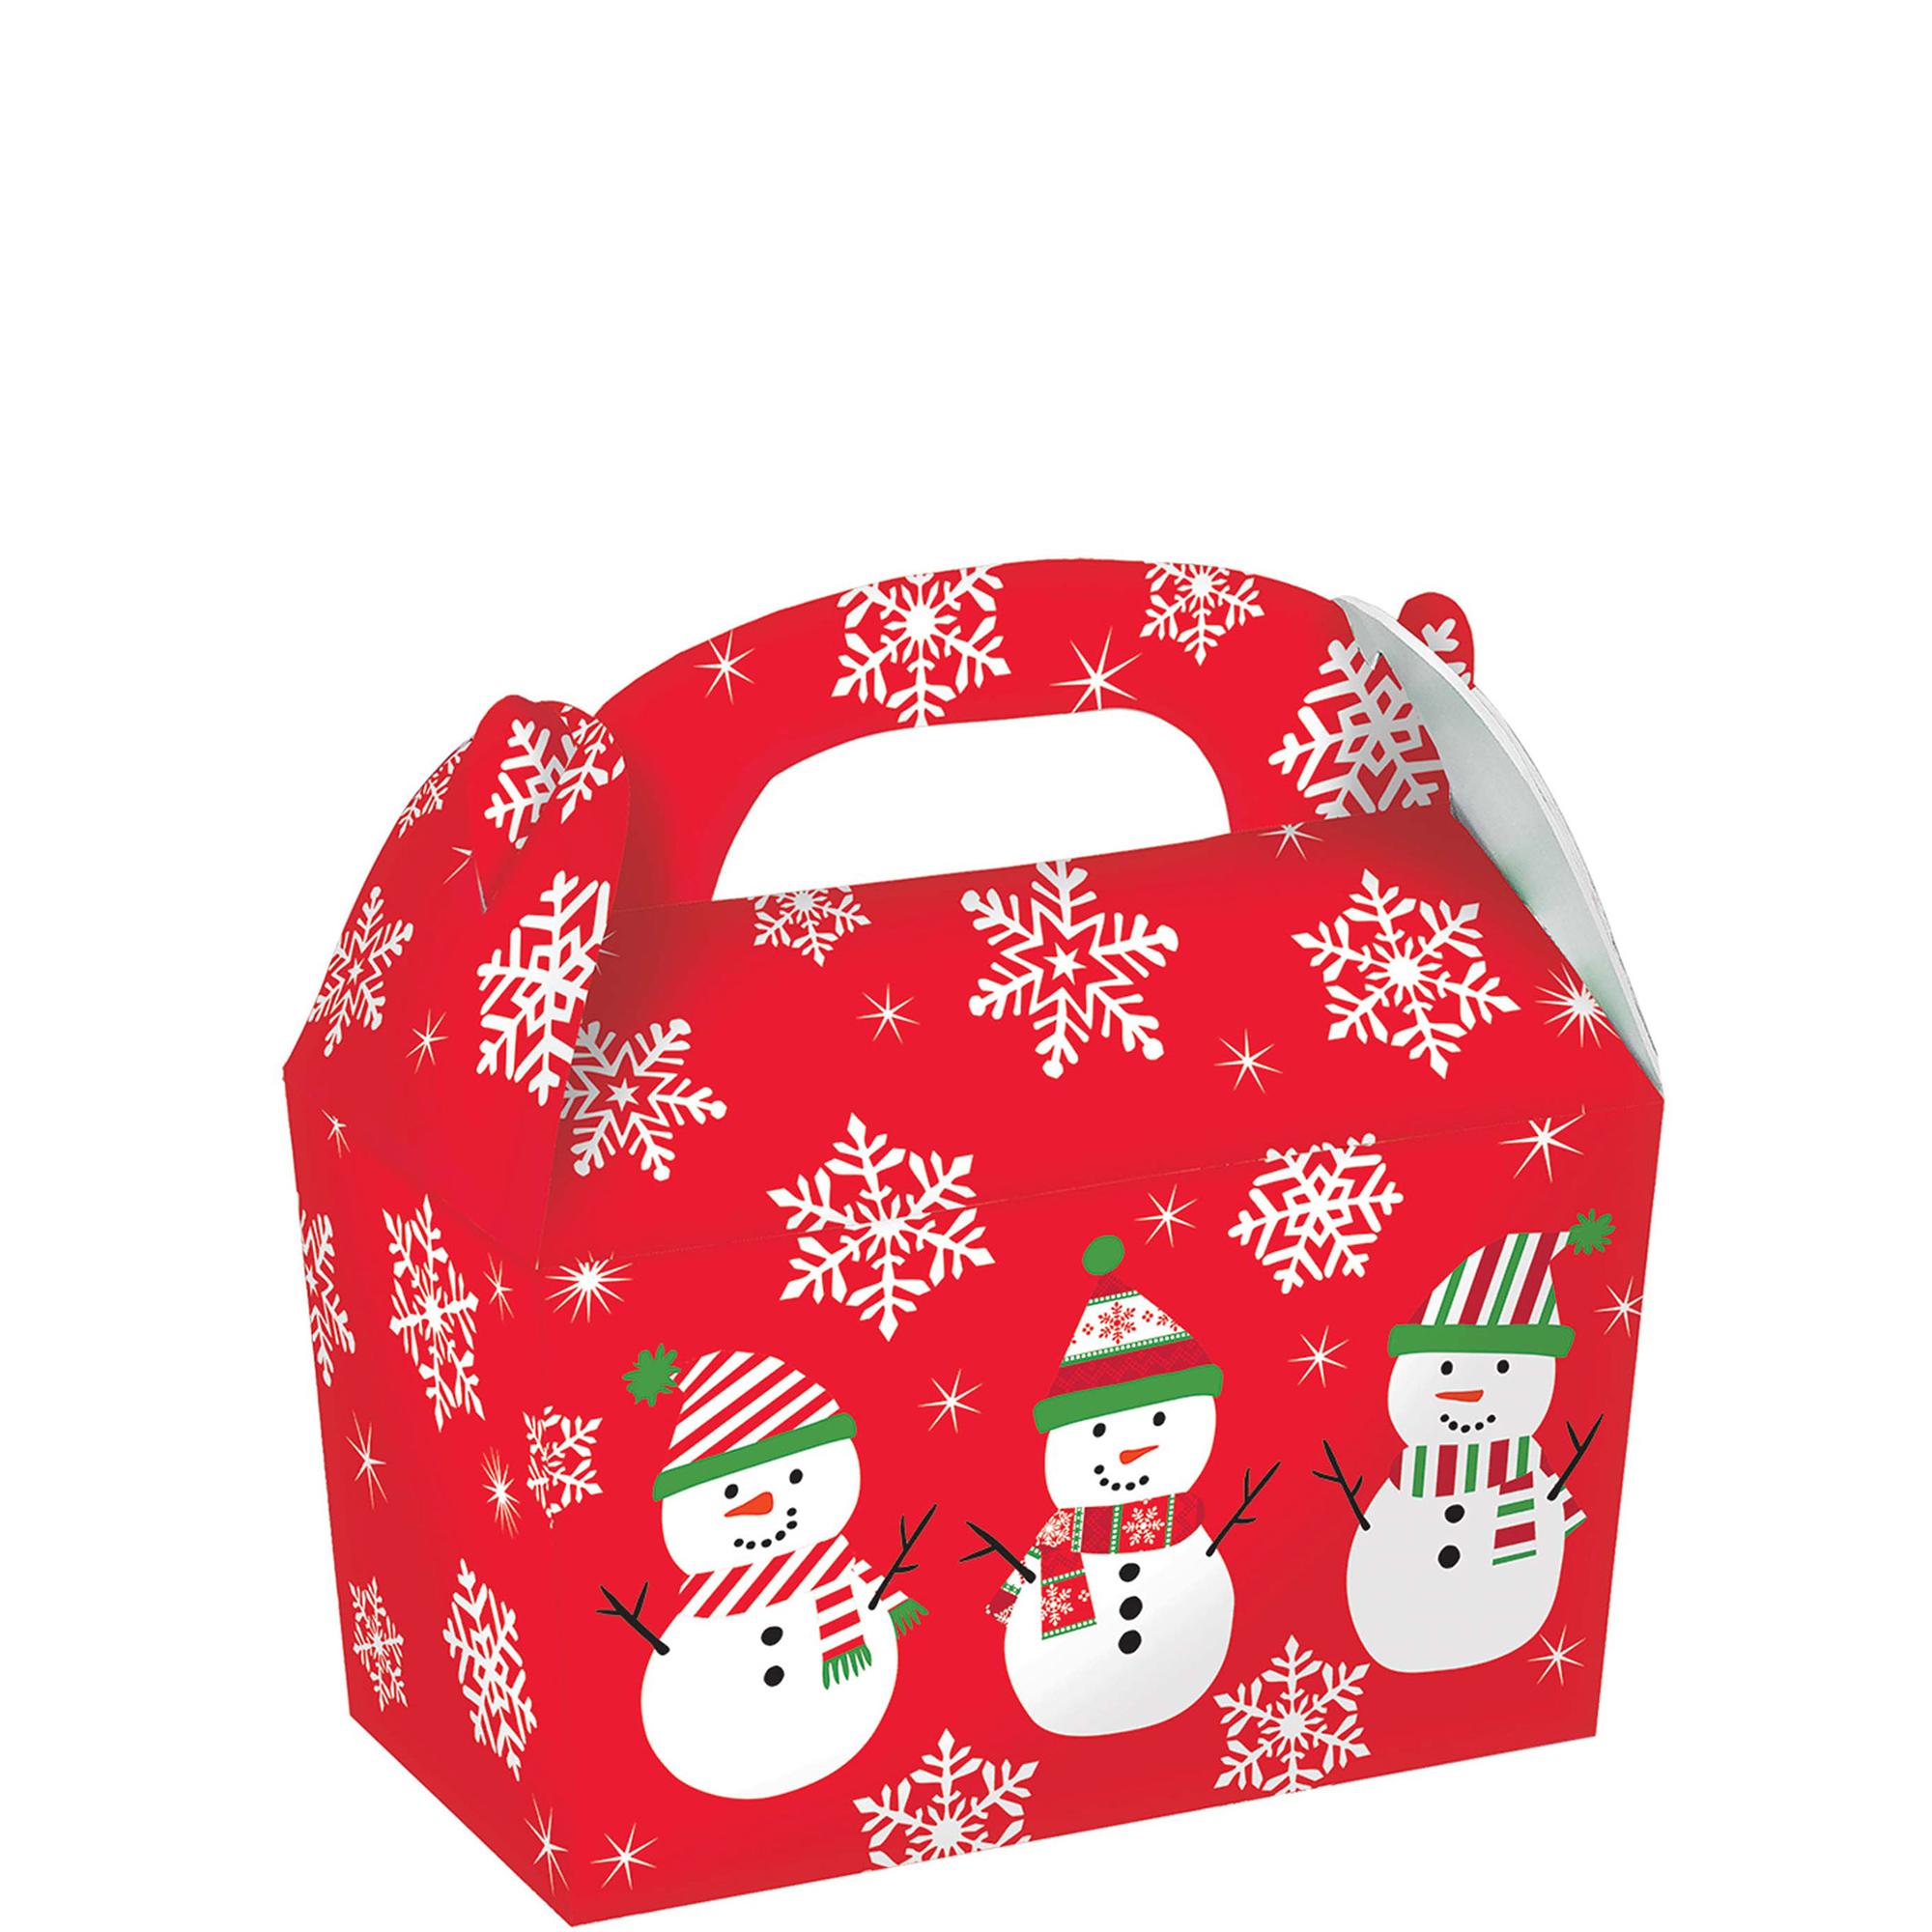 Snowman Gable Box Cardboard 5pcs Favours - Party Centre